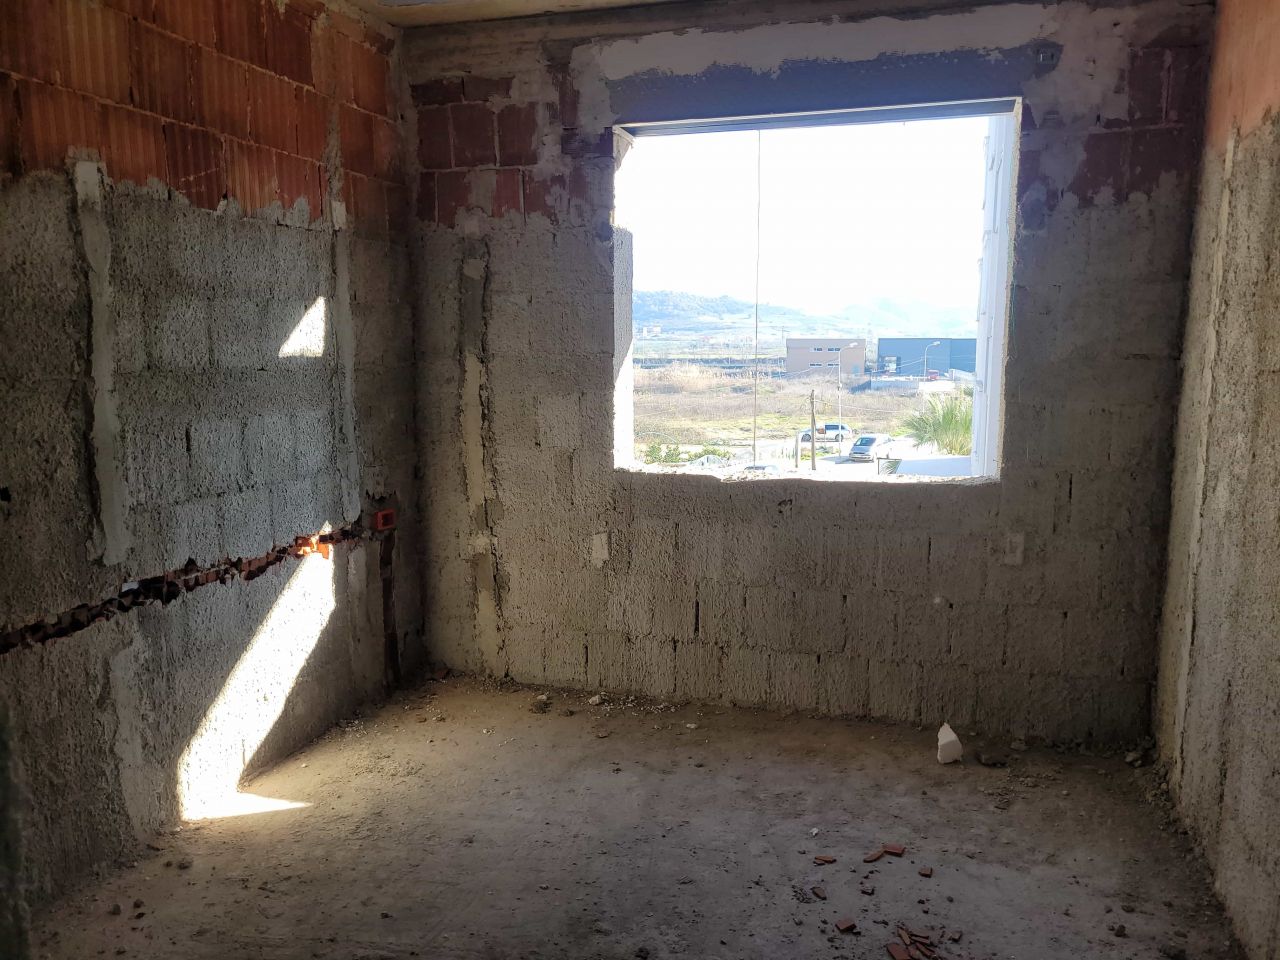 Albanien Immobilien In Durres. Neue Wohnungen Für Eine Neue Residenz Im Bau